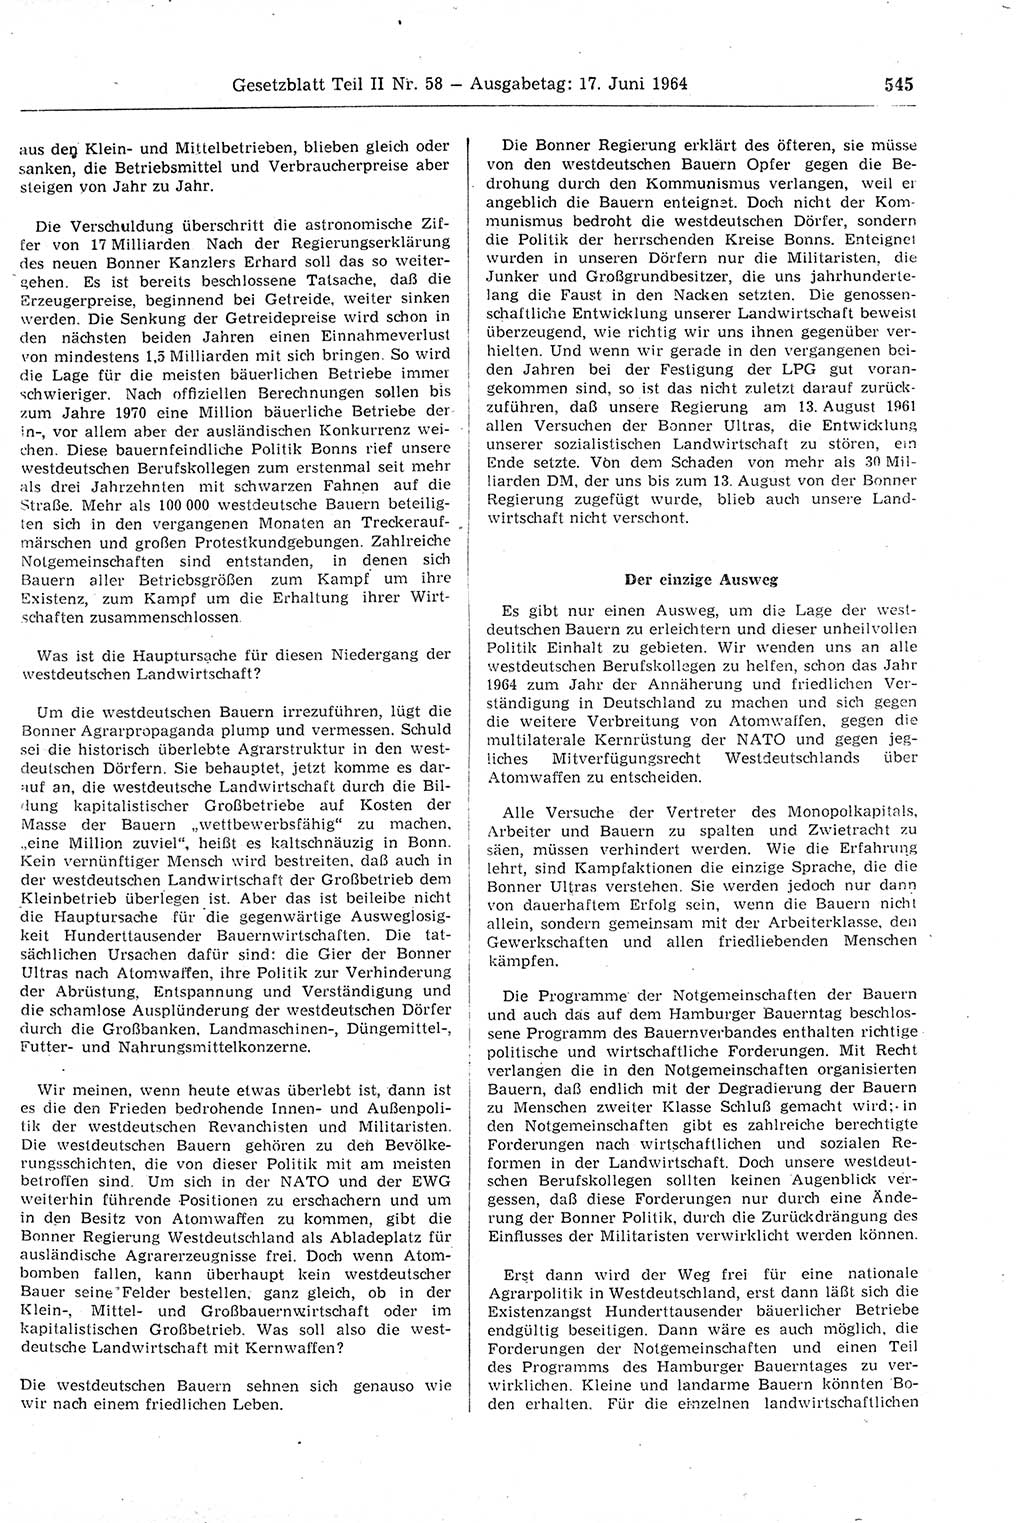 Gesetzblatt (GBl.) der Deutschen Demokratischen Republik (DDR) Teil ⅠⅠ 1964, Seite 545 (GBl. DDR ⅠⅠ 1964, S. 545)